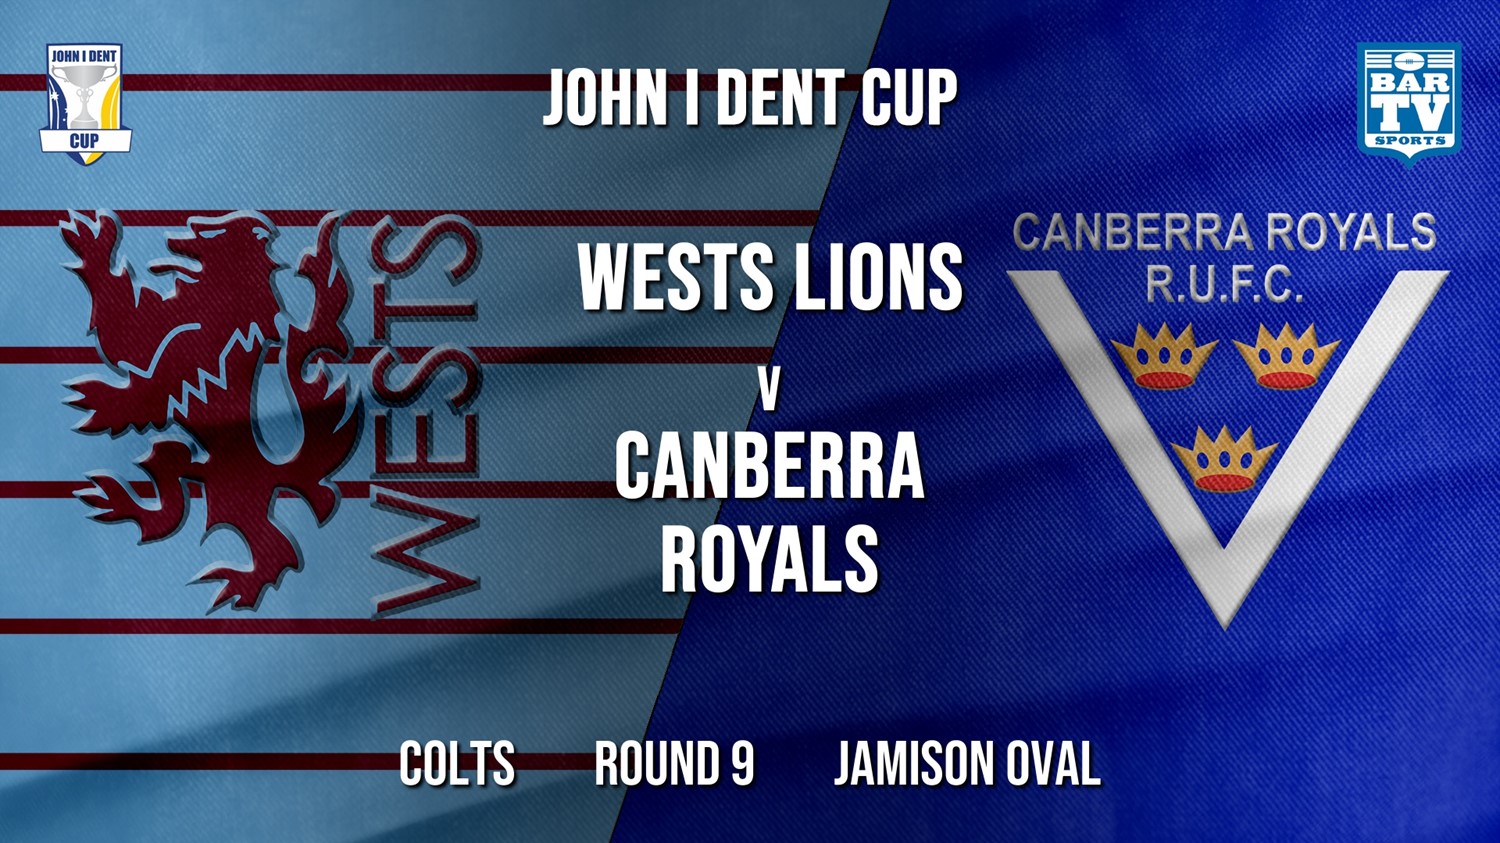 John I Dent Round 9 - Colts - Wests Lions v Canberra Royals Minigame Slate Image